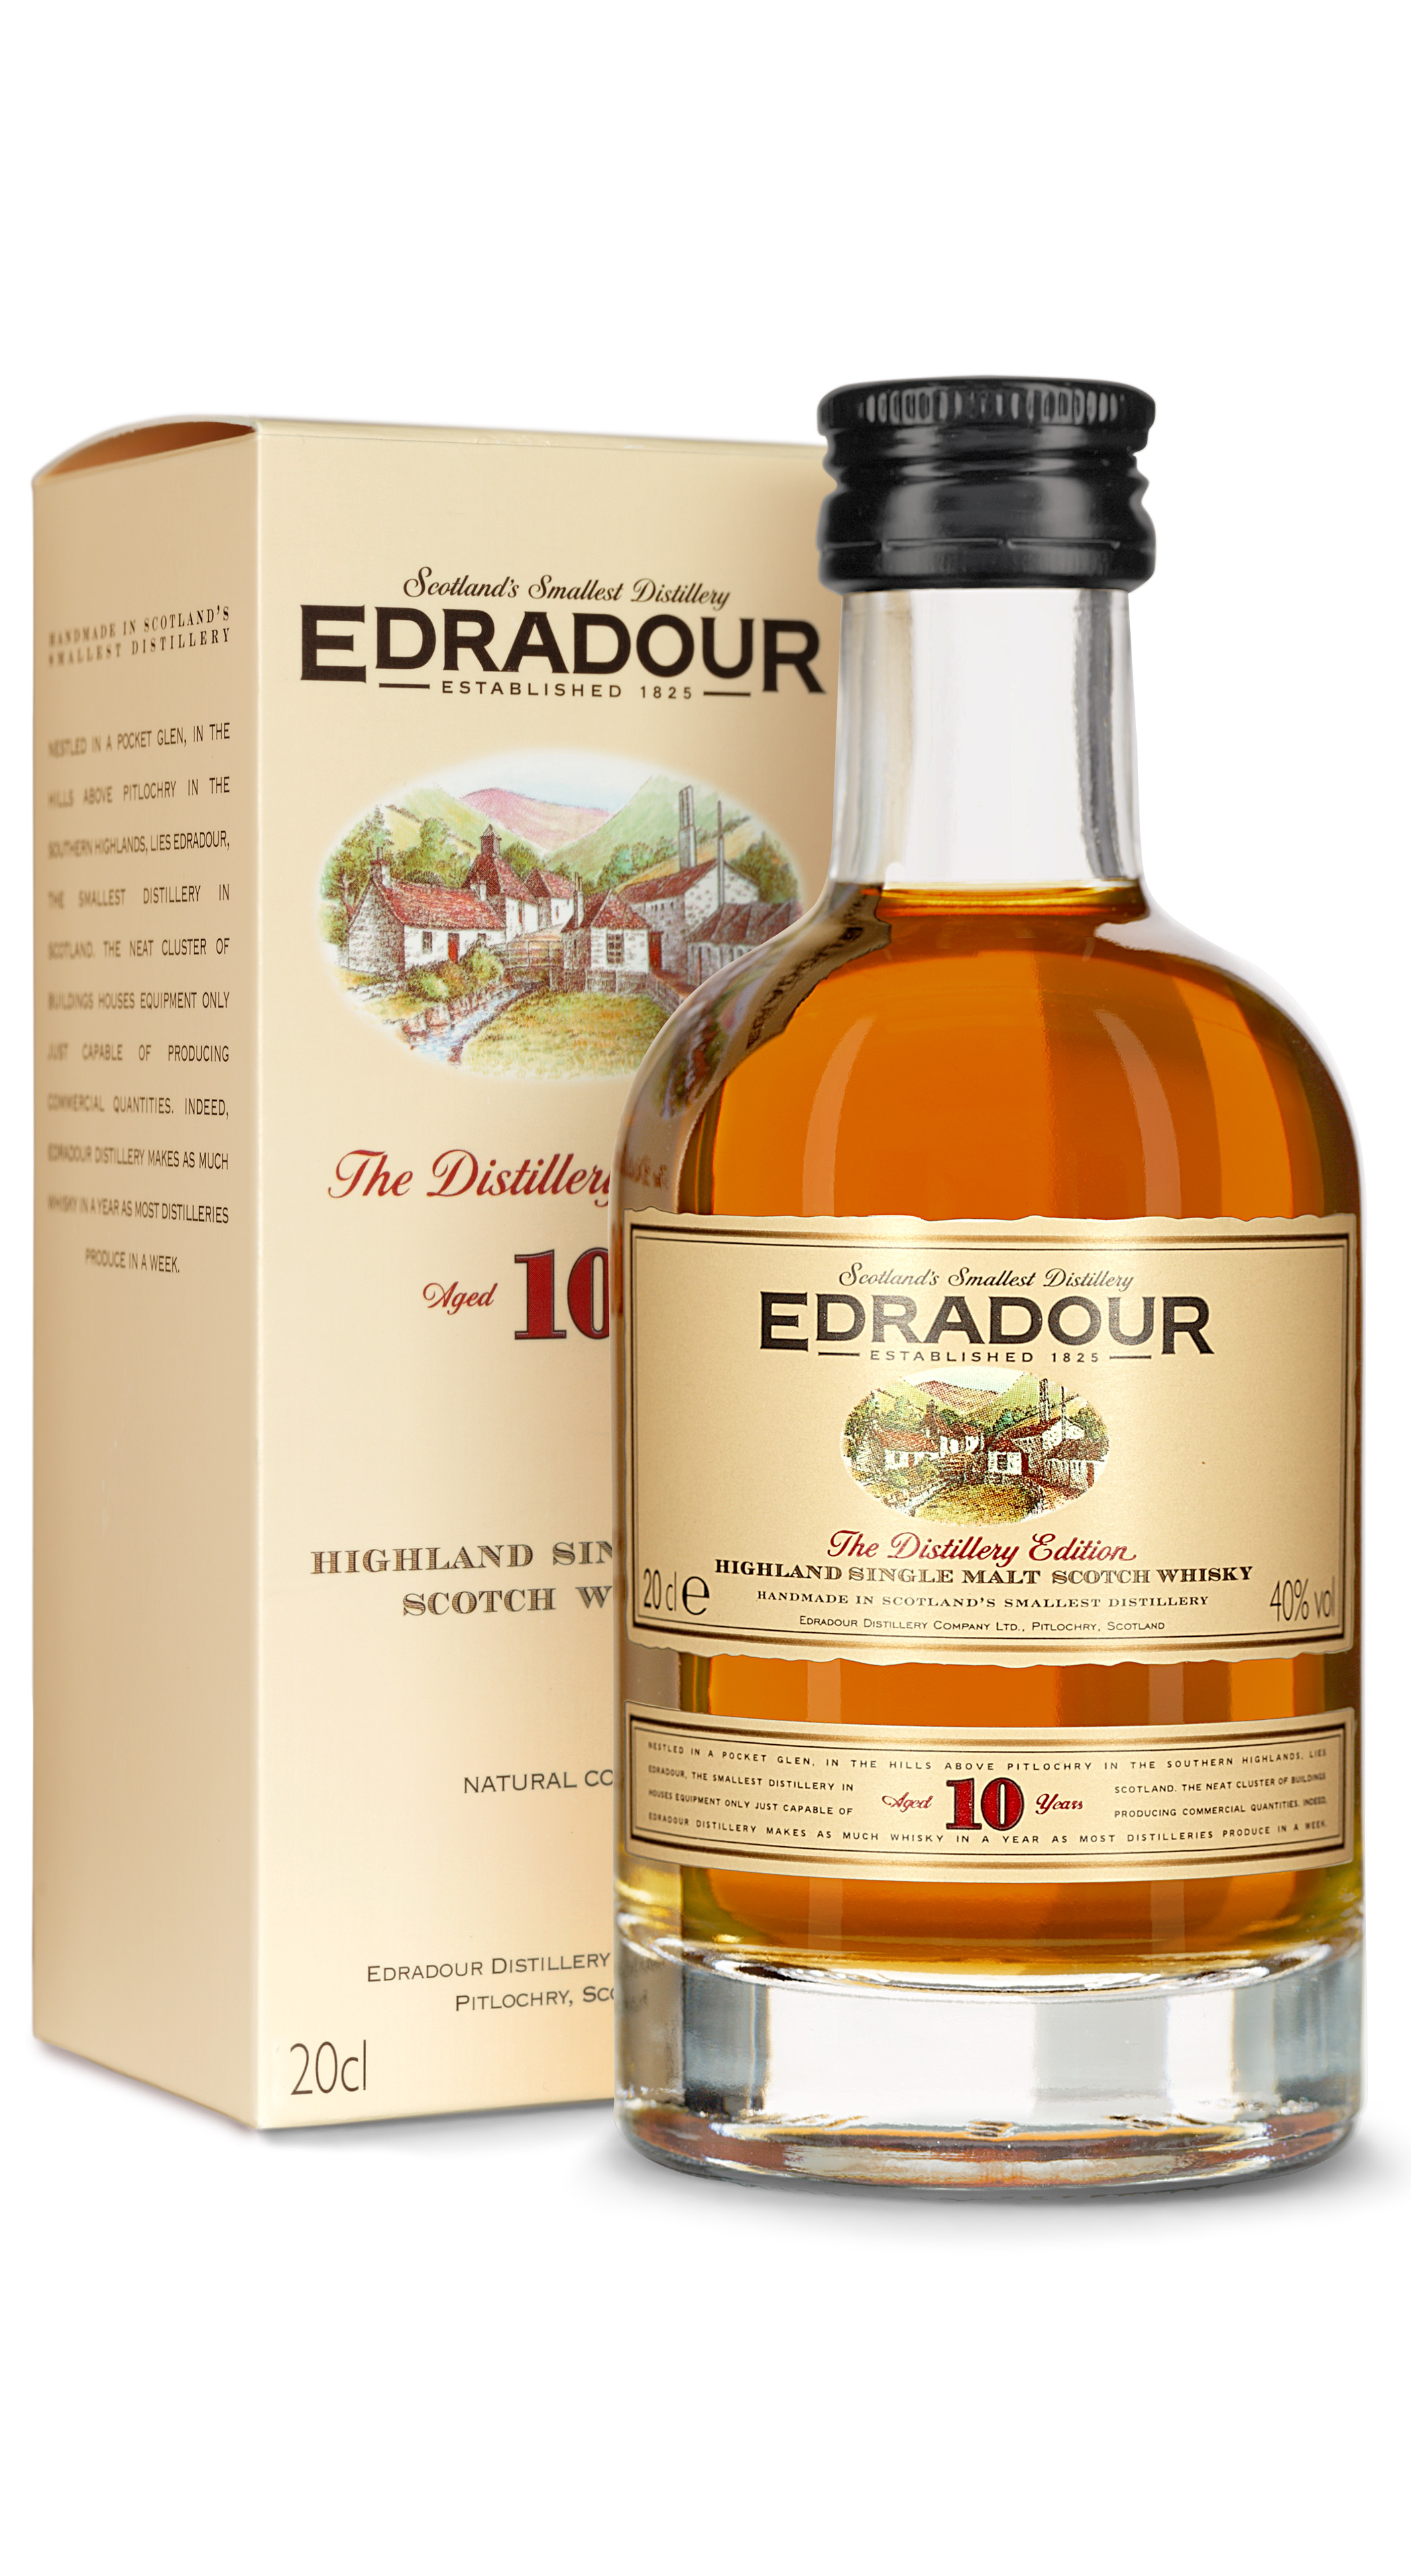 18,90 Dr. Kochan | kaufen Edradour € l Single 10 Onlineshop und Fachgeschäft Malt bei Schnapskultur für Jahre 0,2 Kochan Schnapskultur Whisky Dr. Highland